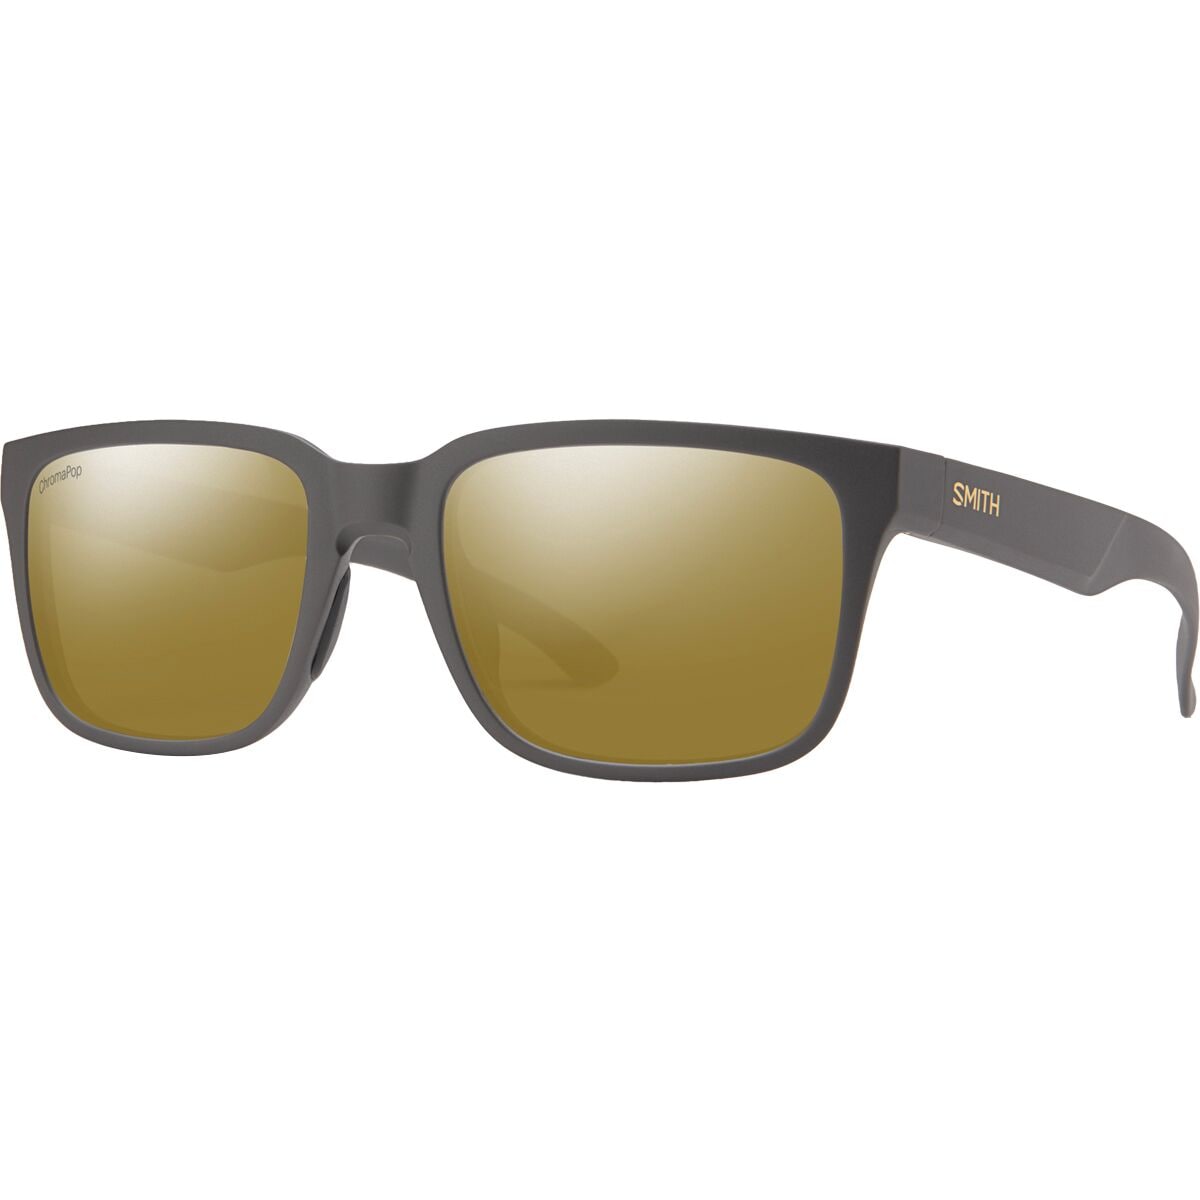 Поляризованные солнцезащитные очки Headliner ChromaPop Smith